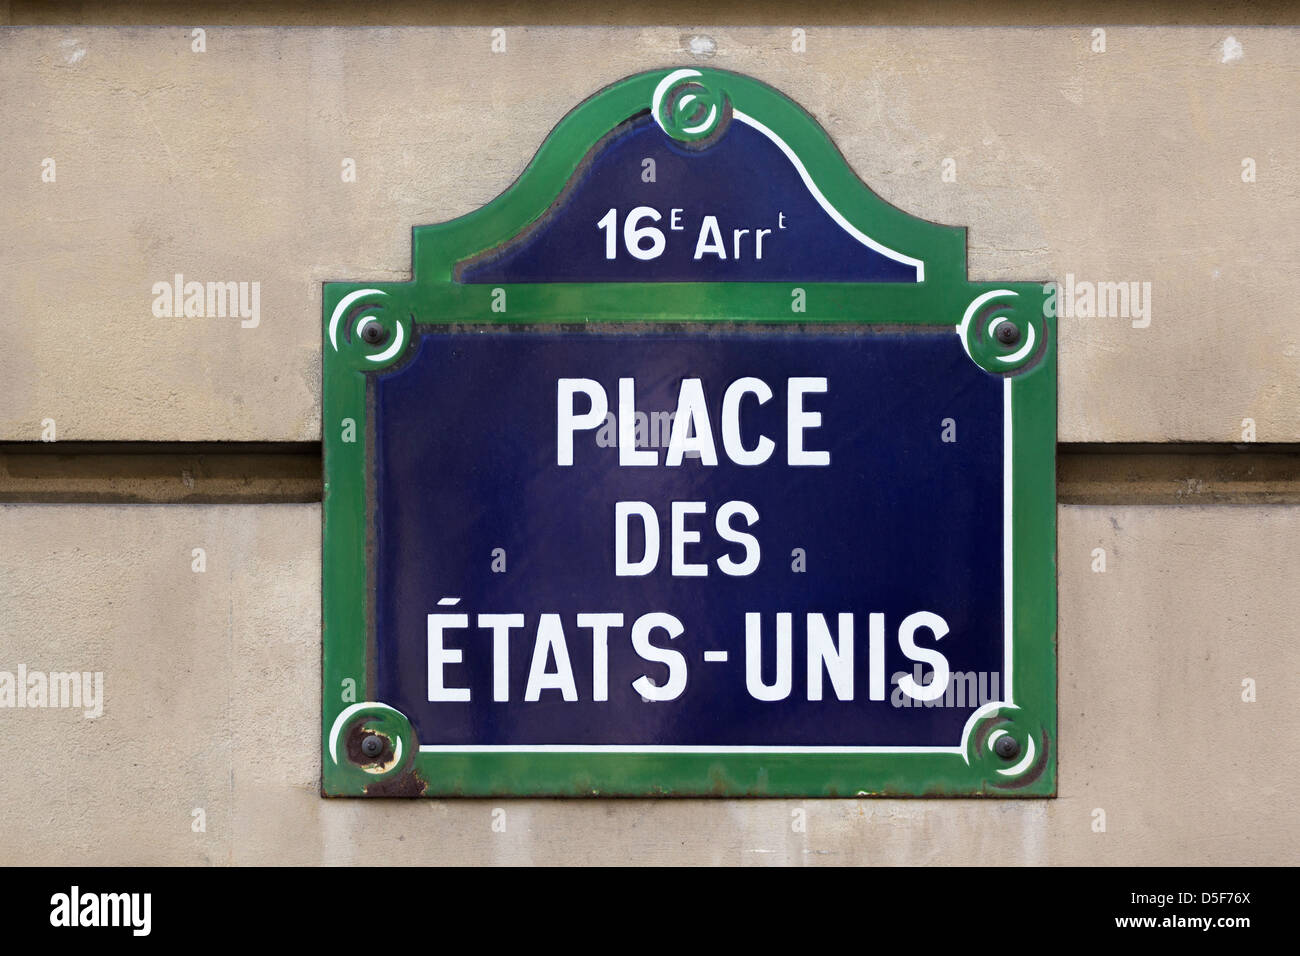 Place des États-Unis street sign, Paris, France Stock Photo